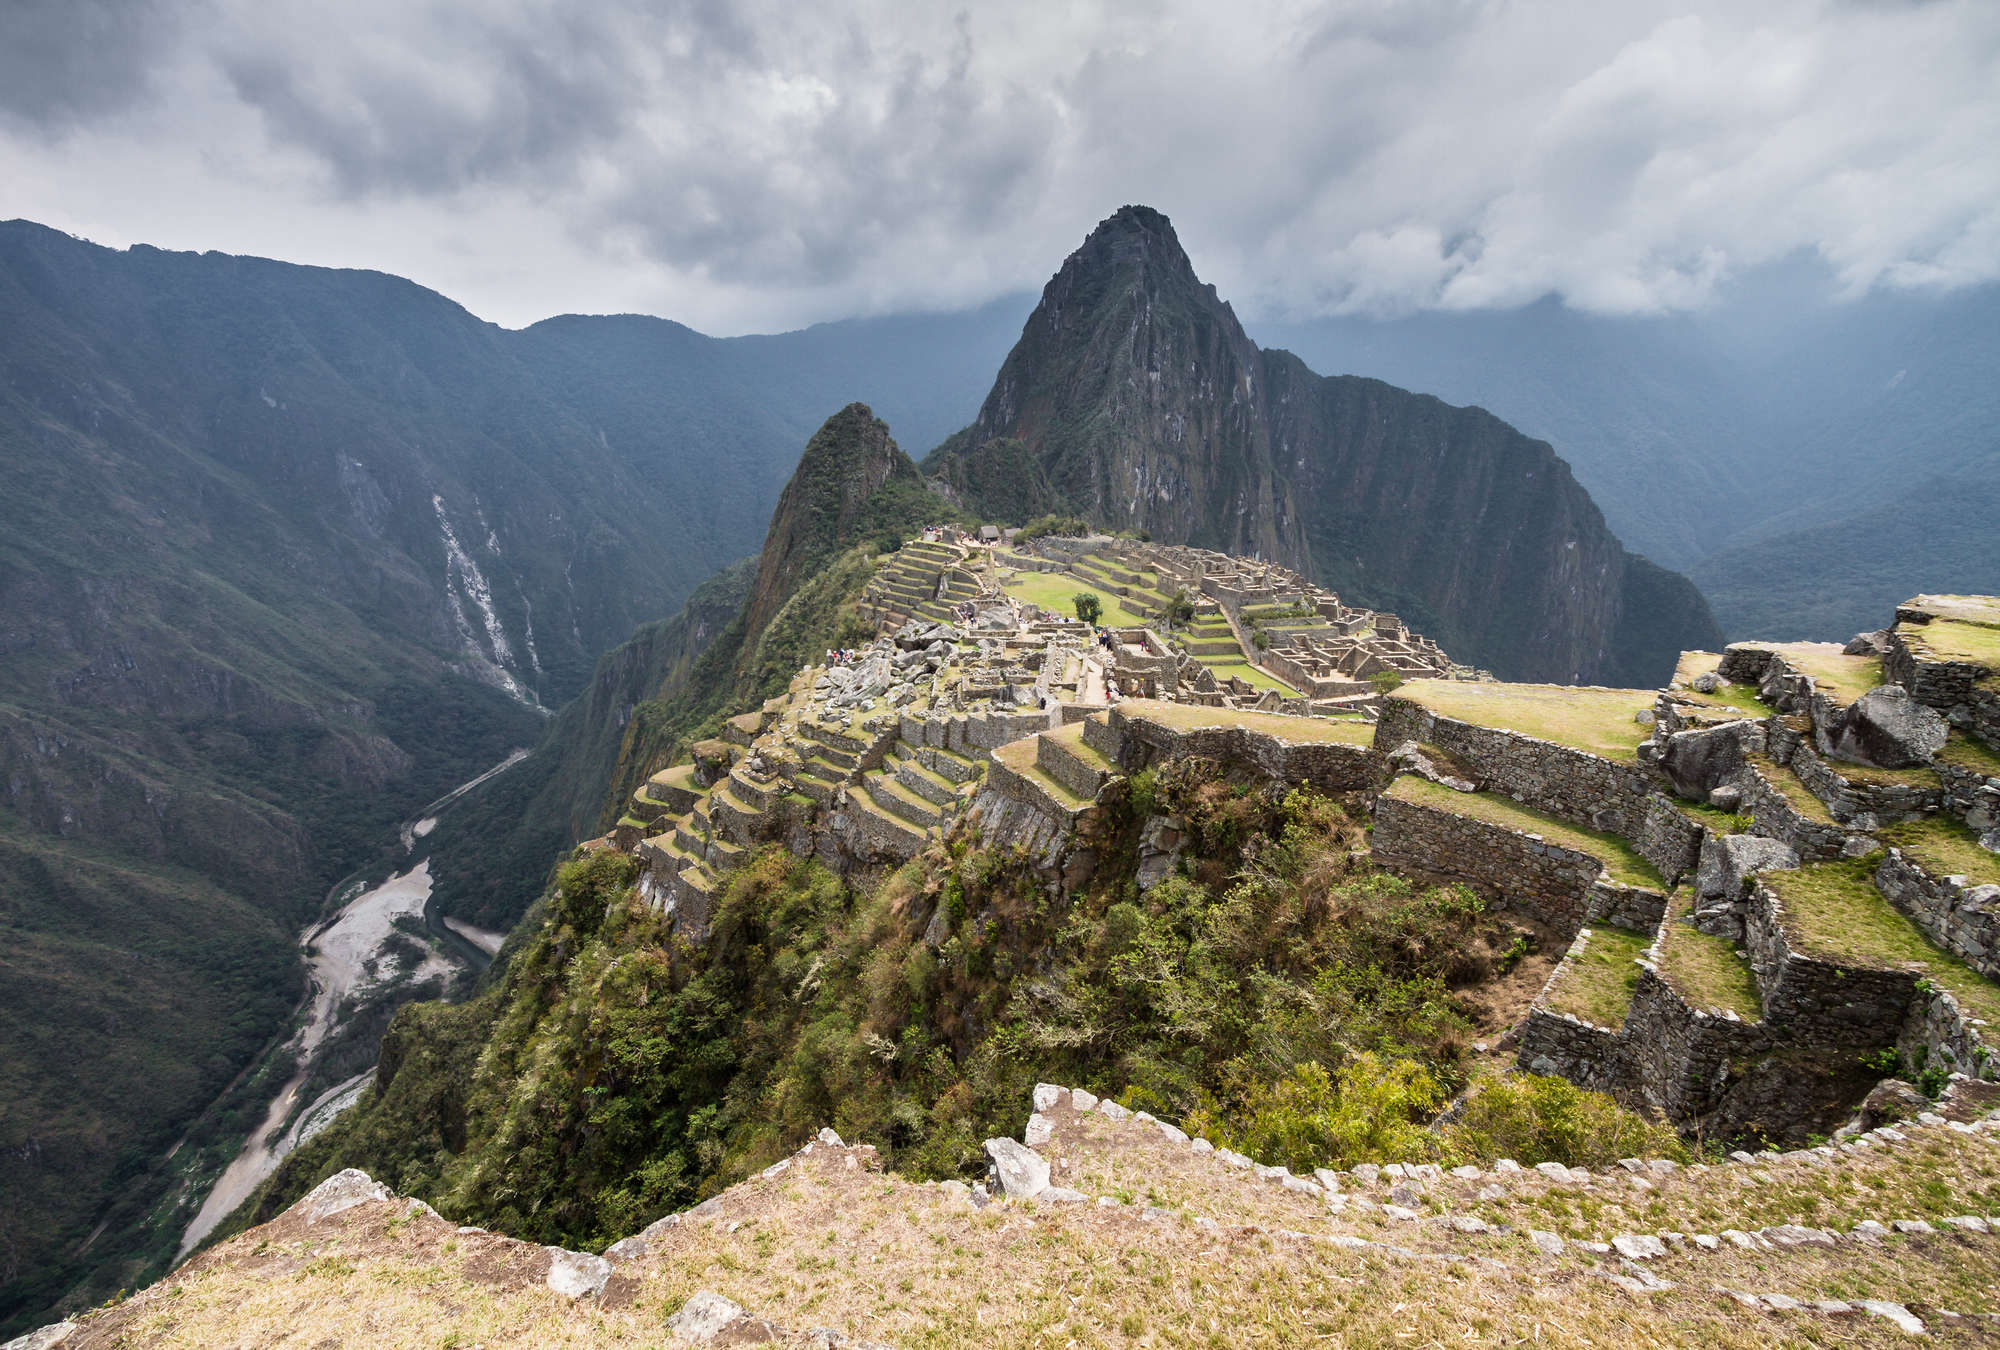             Mural pintoresco con vista al valle de Machu Picchu
        